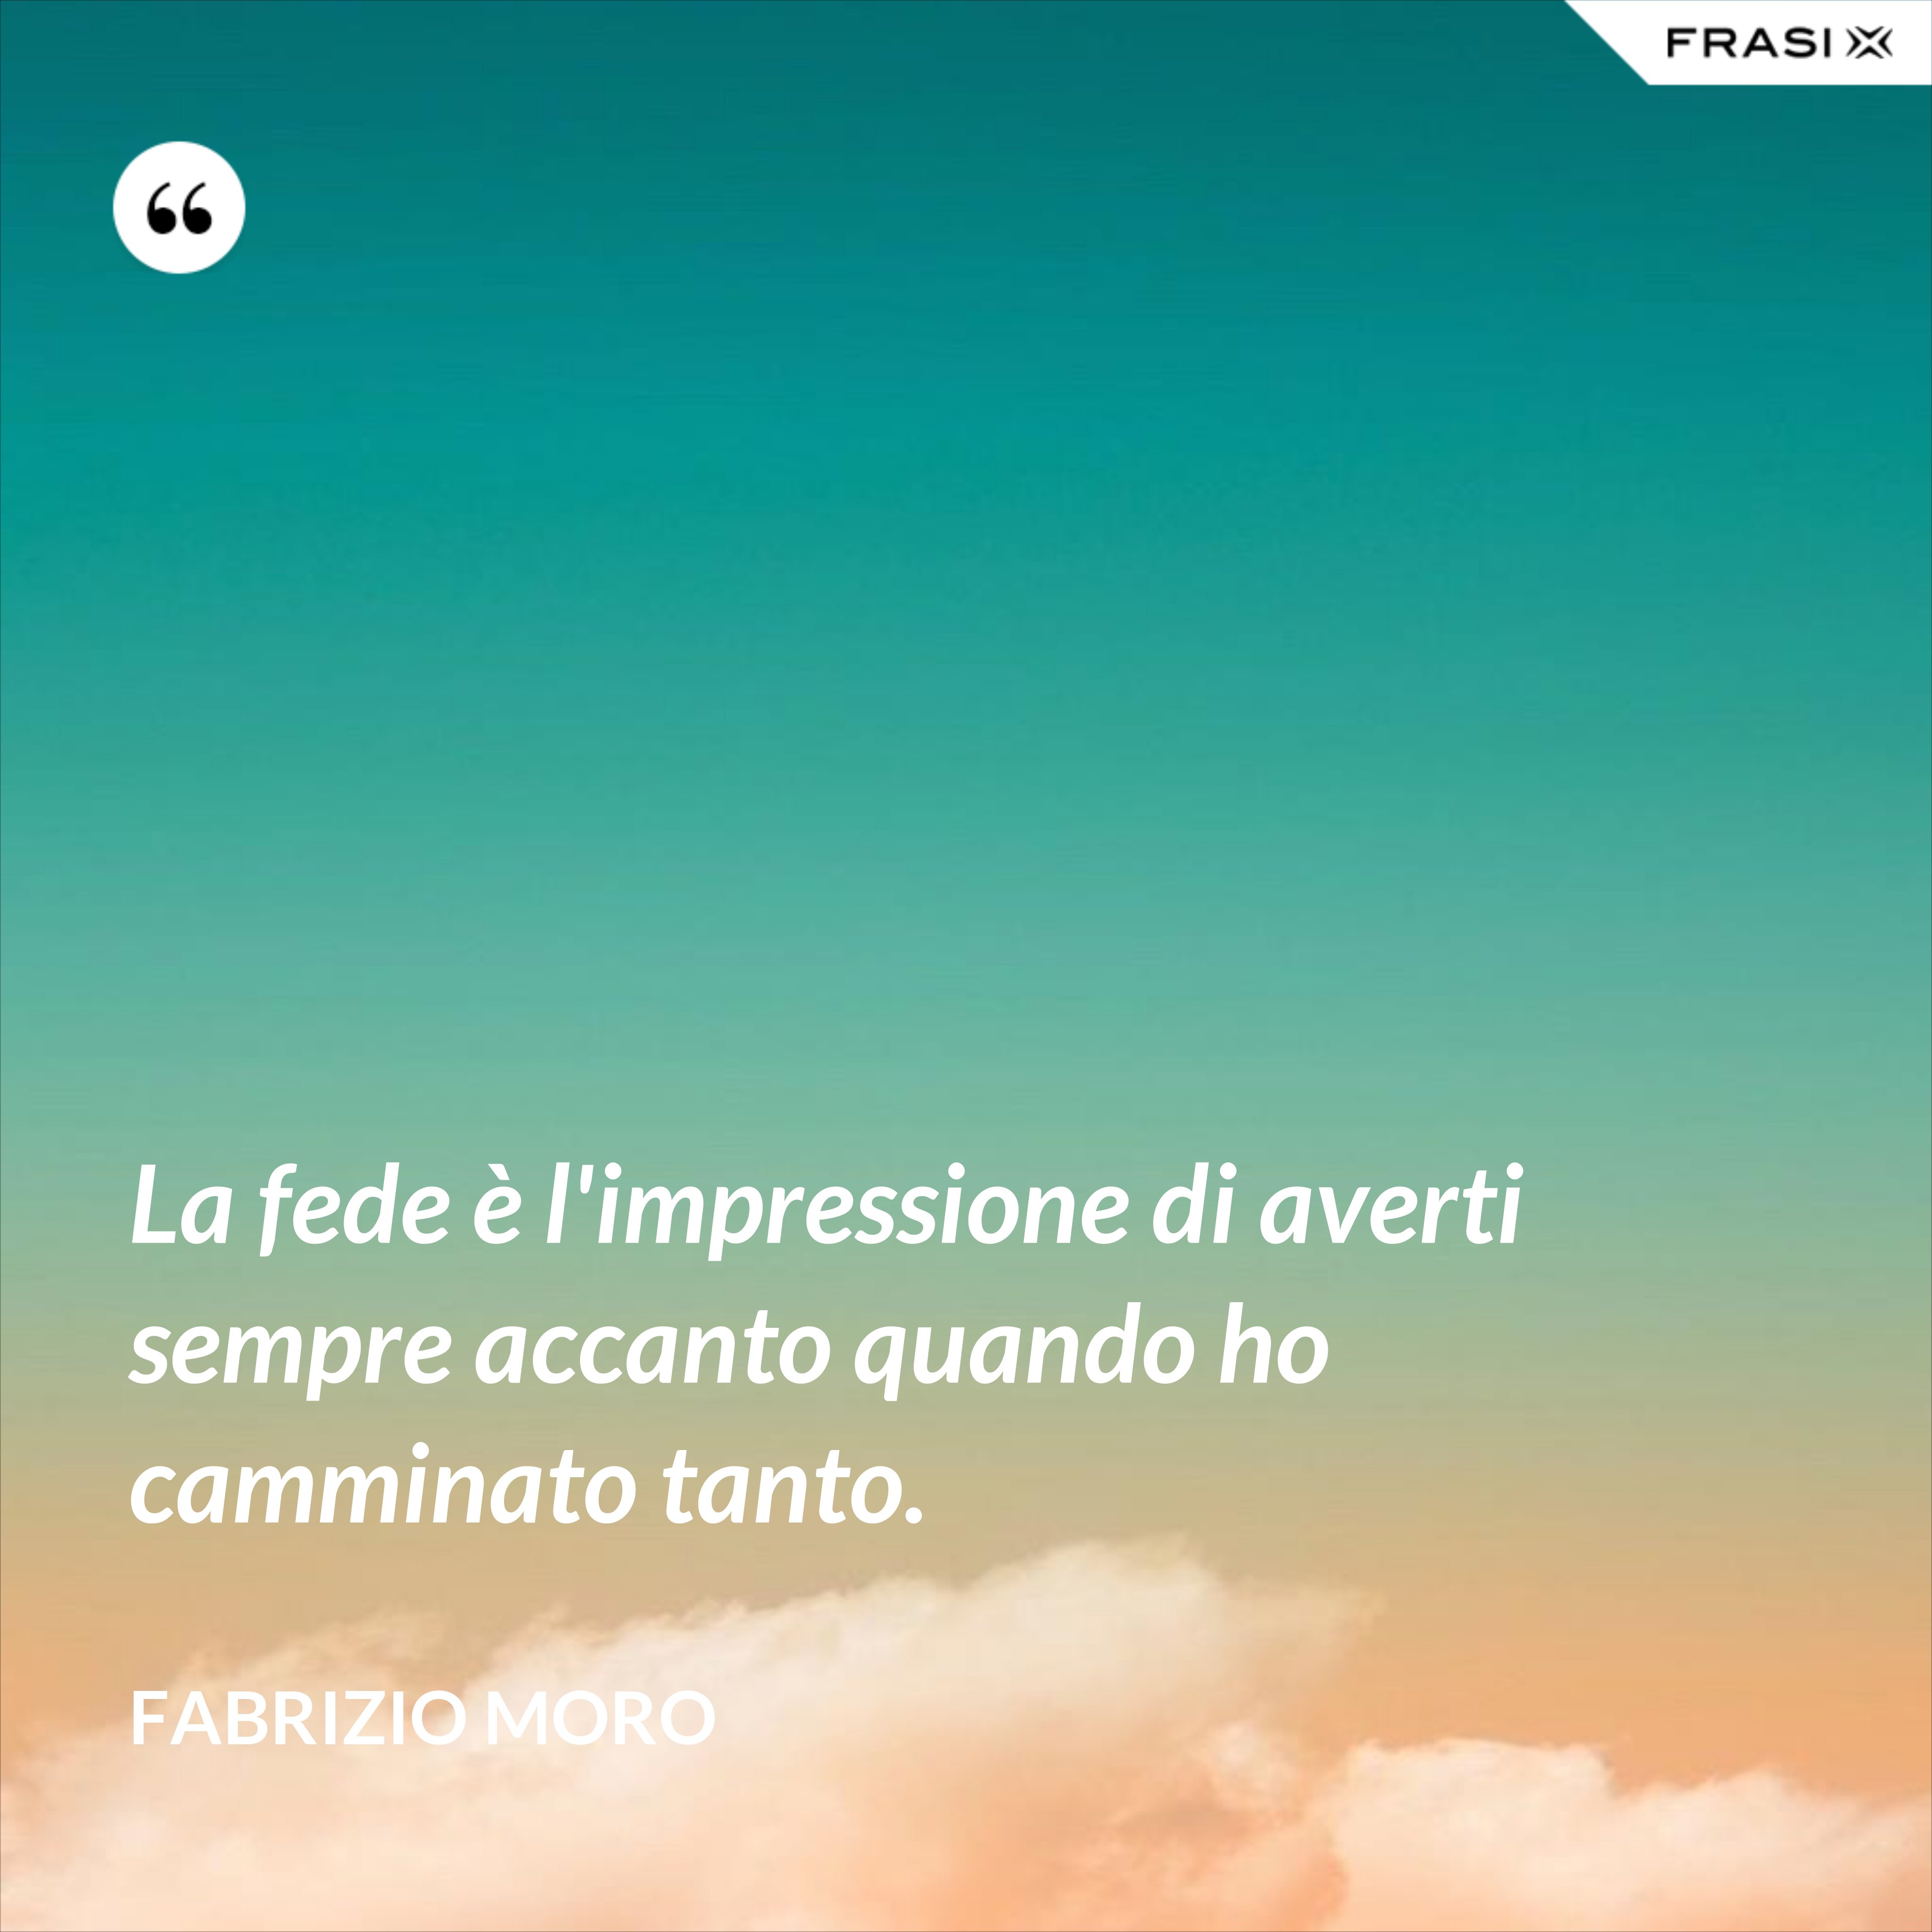 La fede è l'impressione di averti sempre accanto quando ho camminato tanto. - Fabrizio Moro